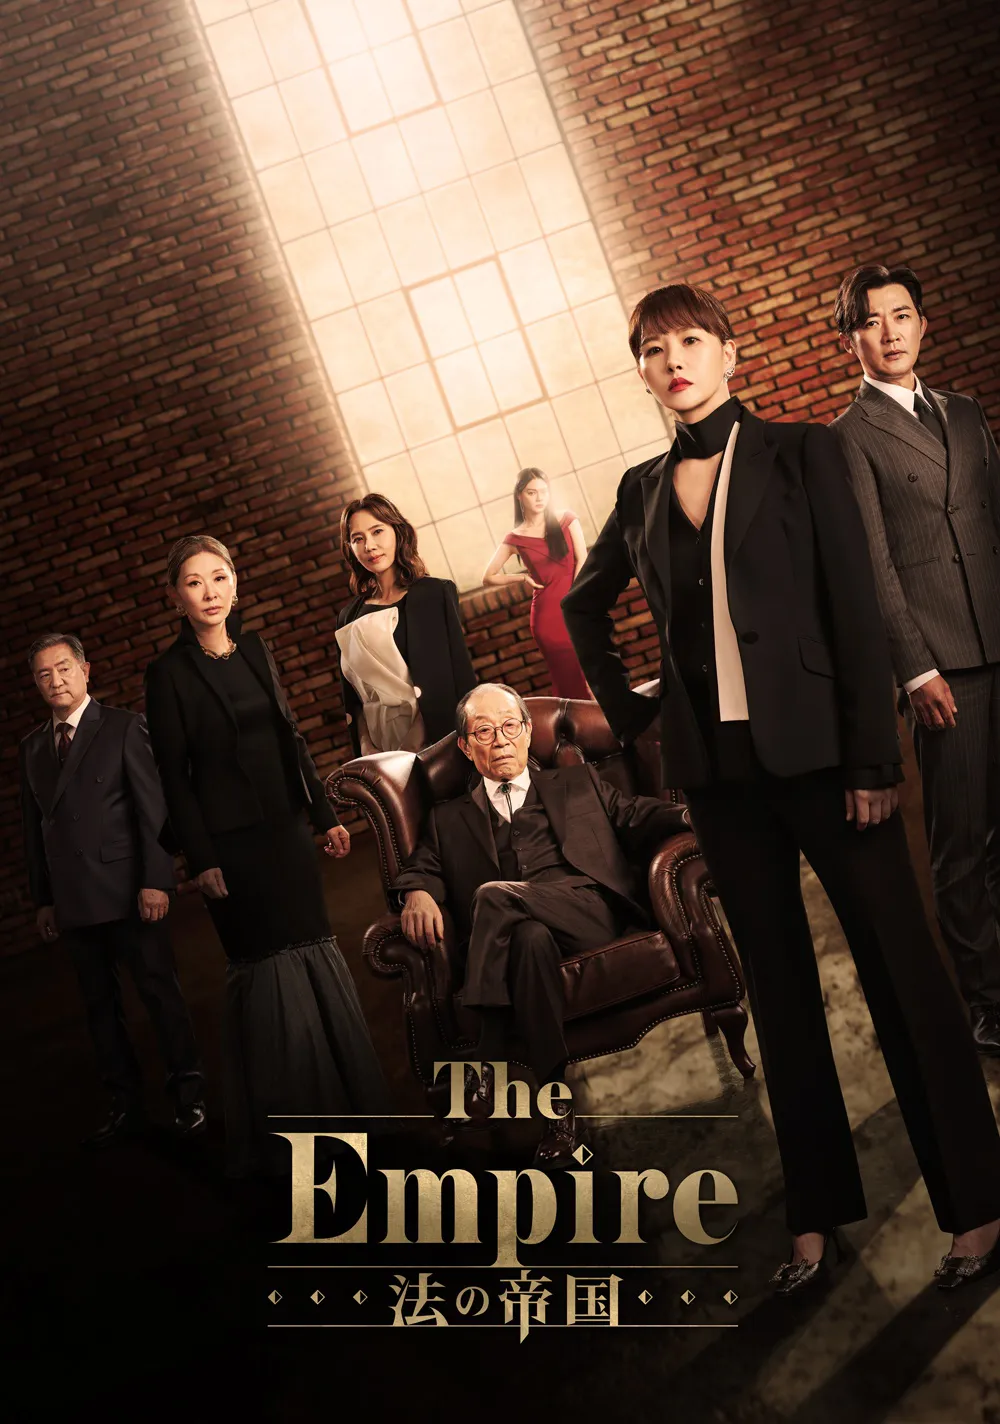 The Empire:法の帝国